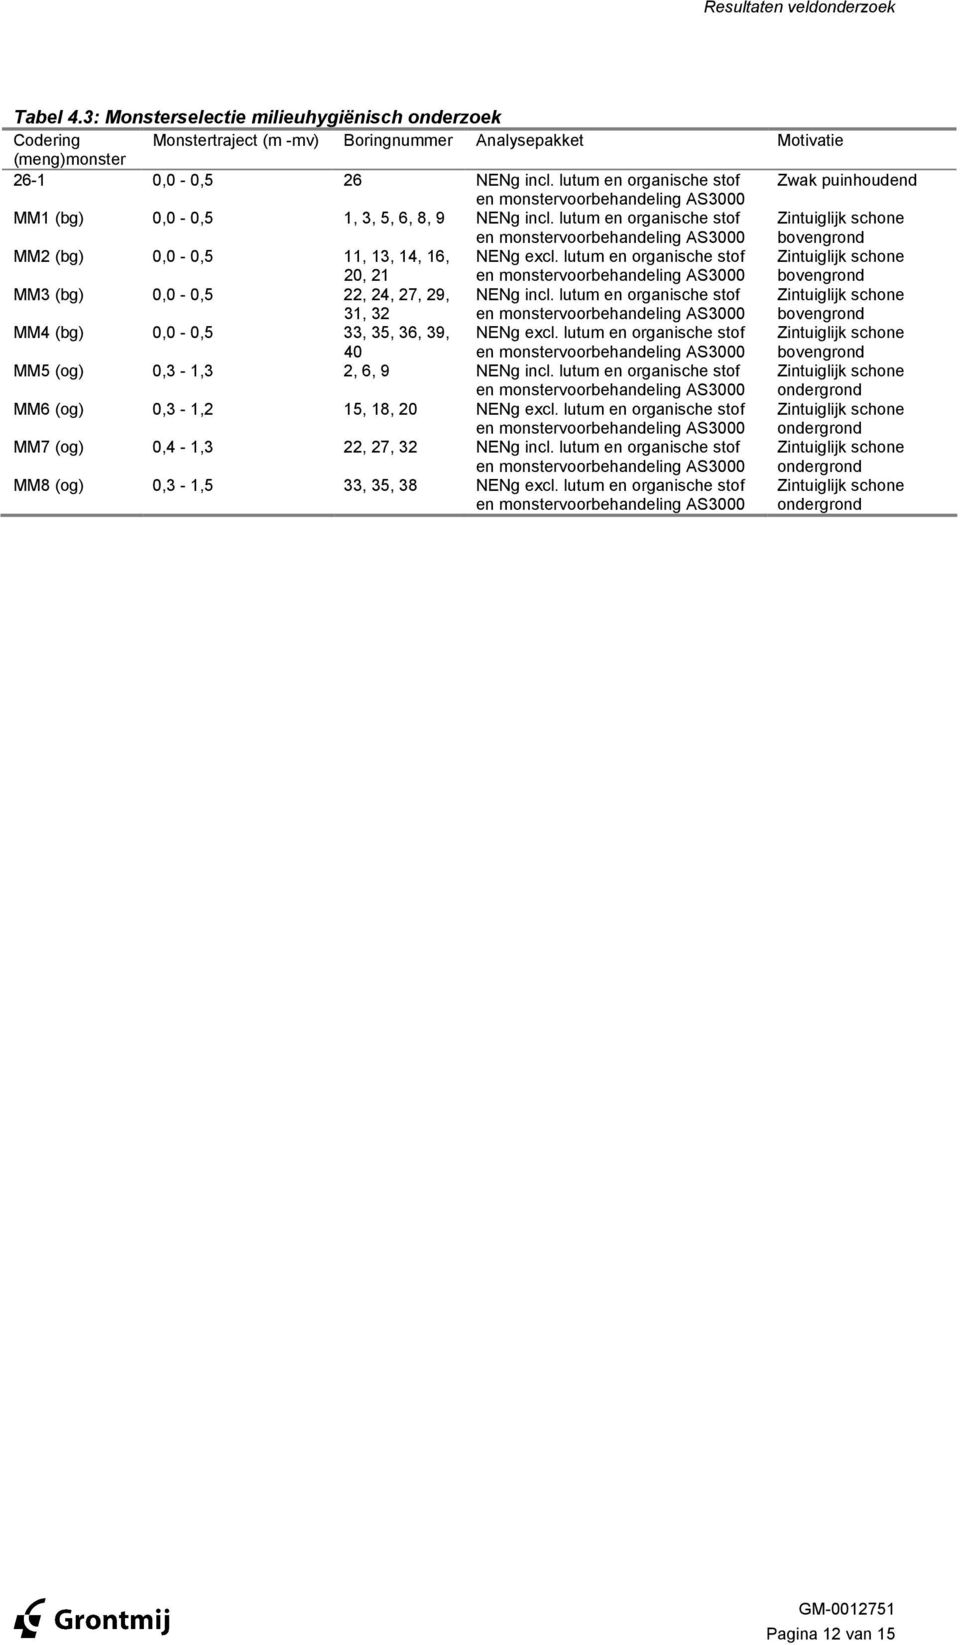 lutum en orgnische stof en monstervoorbehndeling AS3 Zintuiglijk schone bovengrond MM2 (bg), -,5, 3, 4, 6, 2, 2 NENg excl.